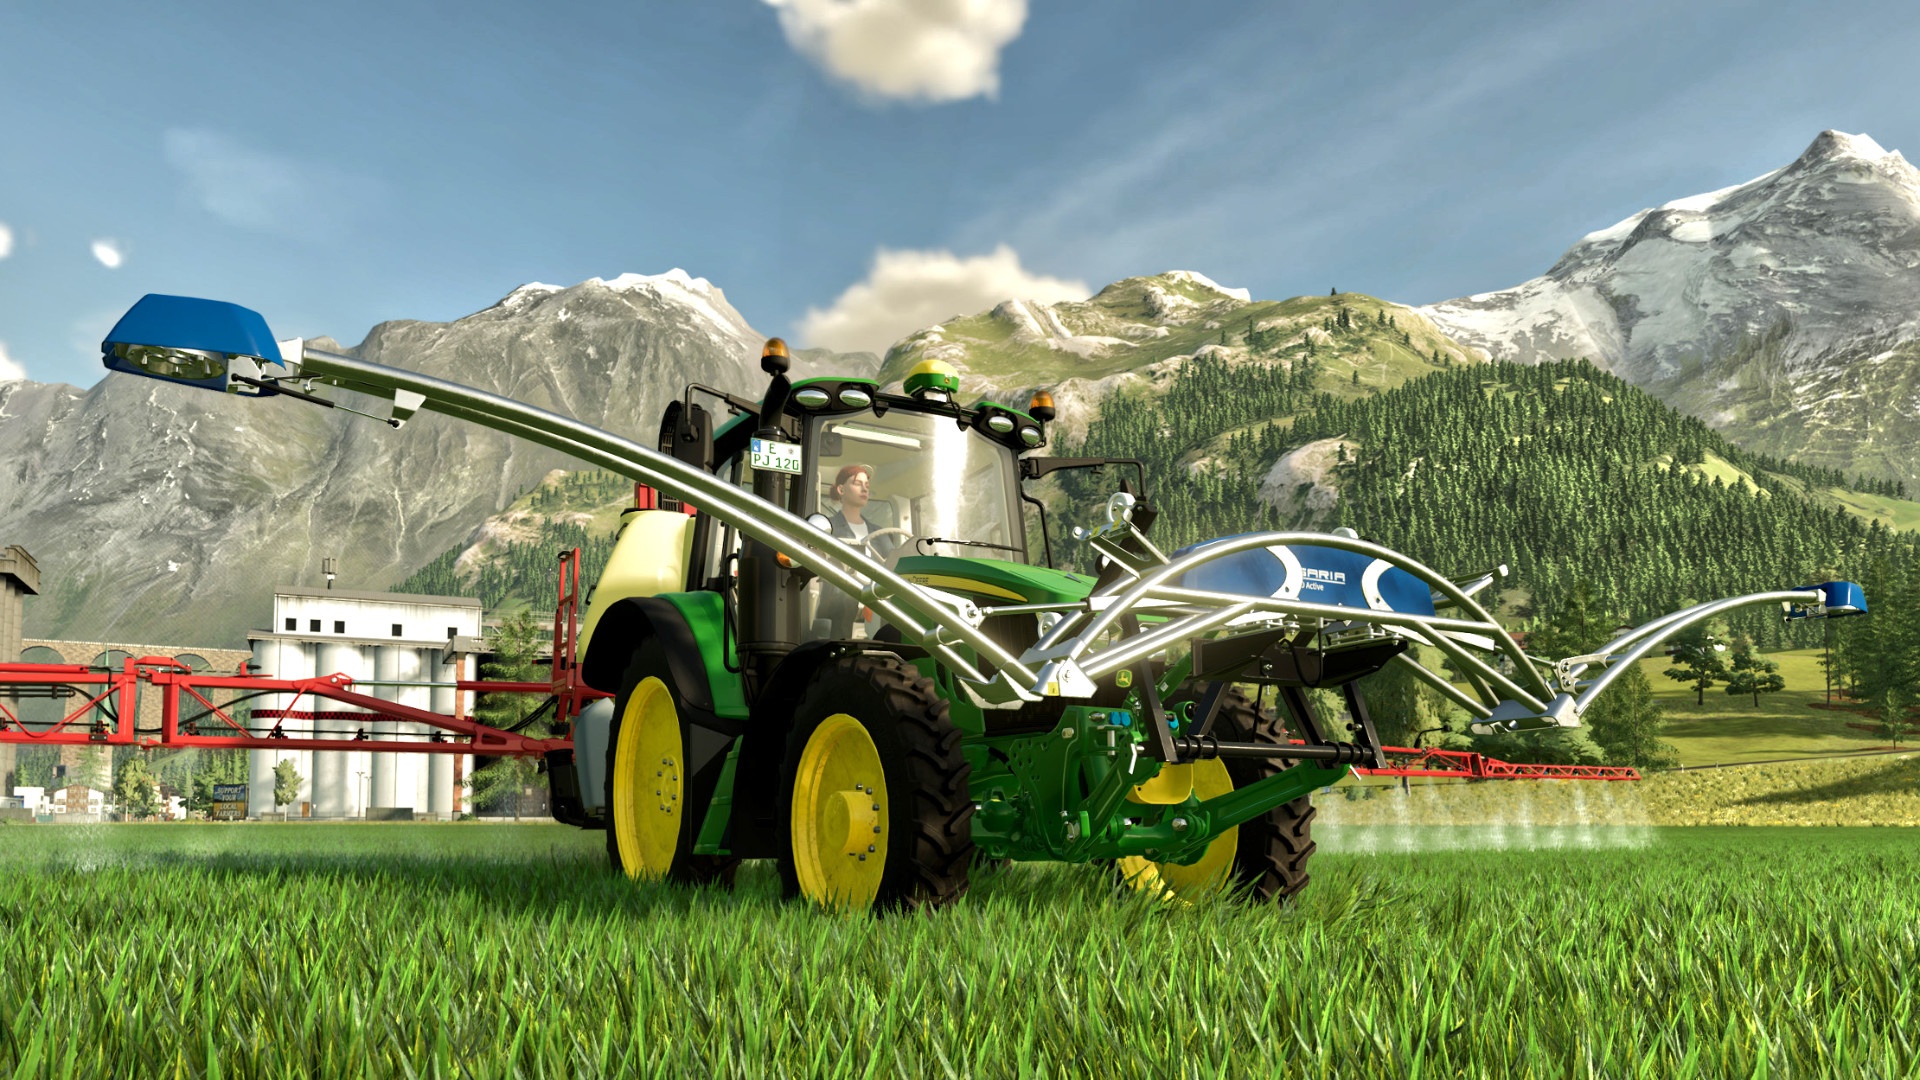 Landwirtschafts-Simulator 22 Year 2 Season Pass: So geht's 2023 weiter